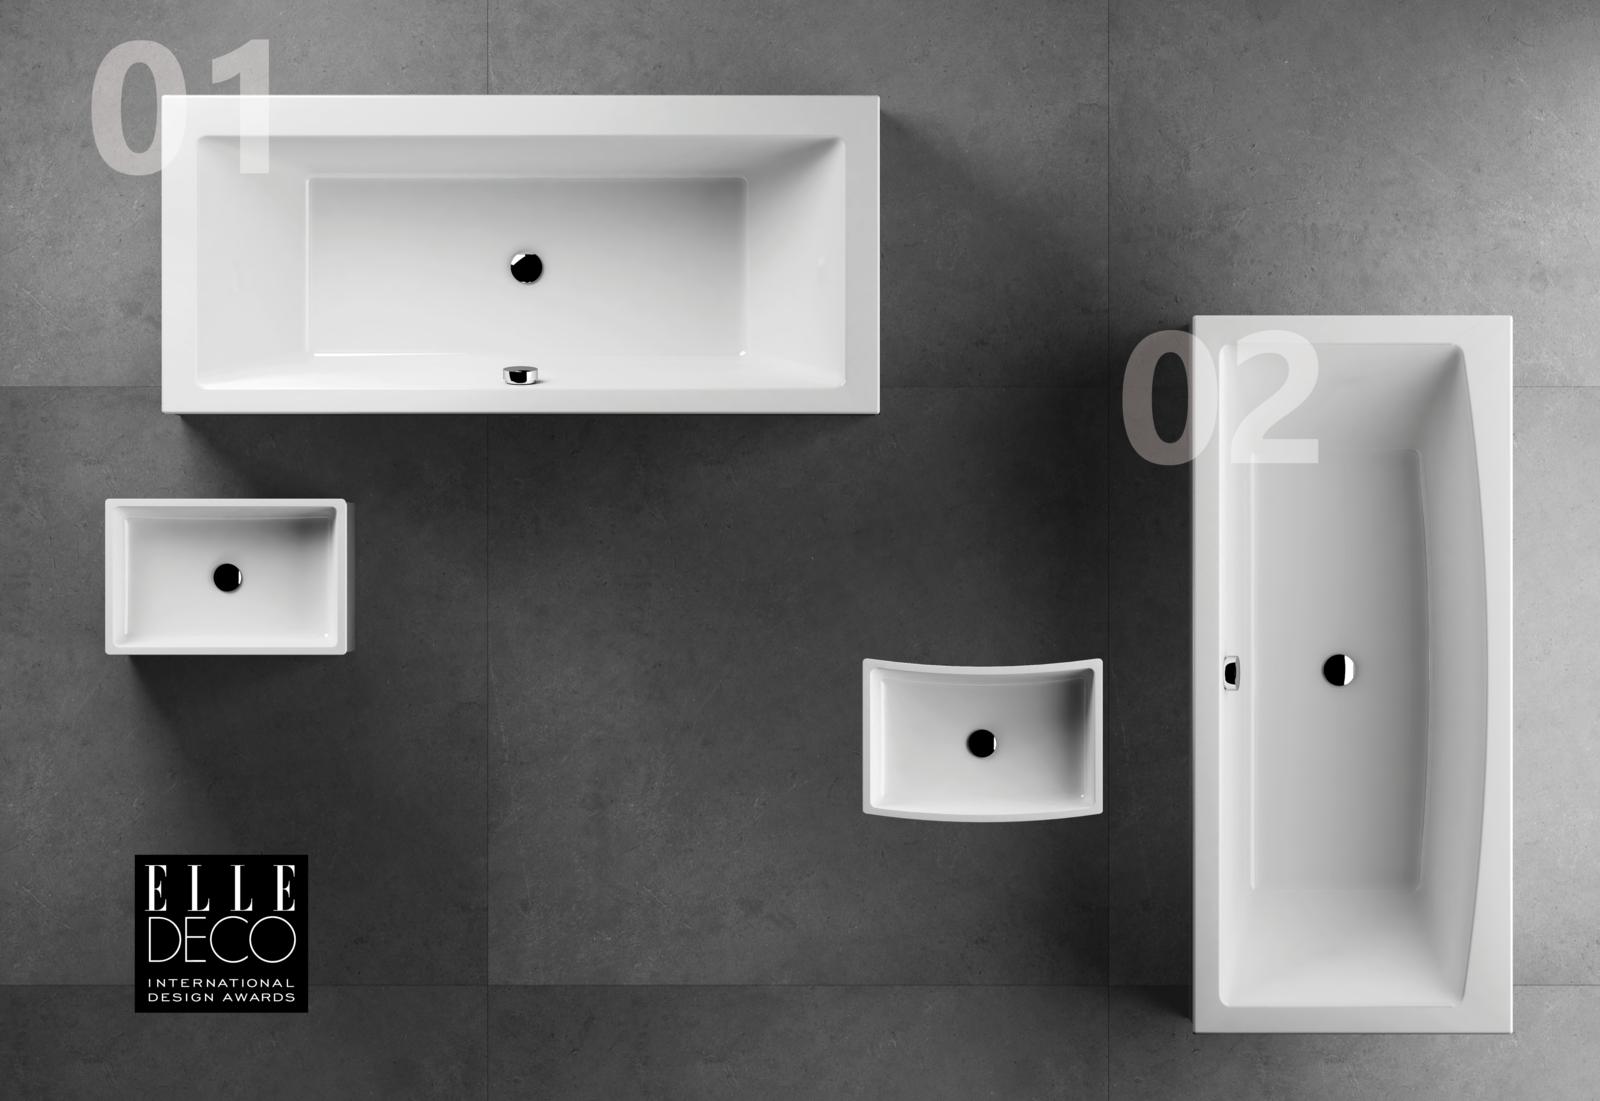 A Formy fürdőszoba koncepciók ötletes mosdókat, mosdópultokat, fürdőszobabútorokat és persze kádakat vonultatnak fel.